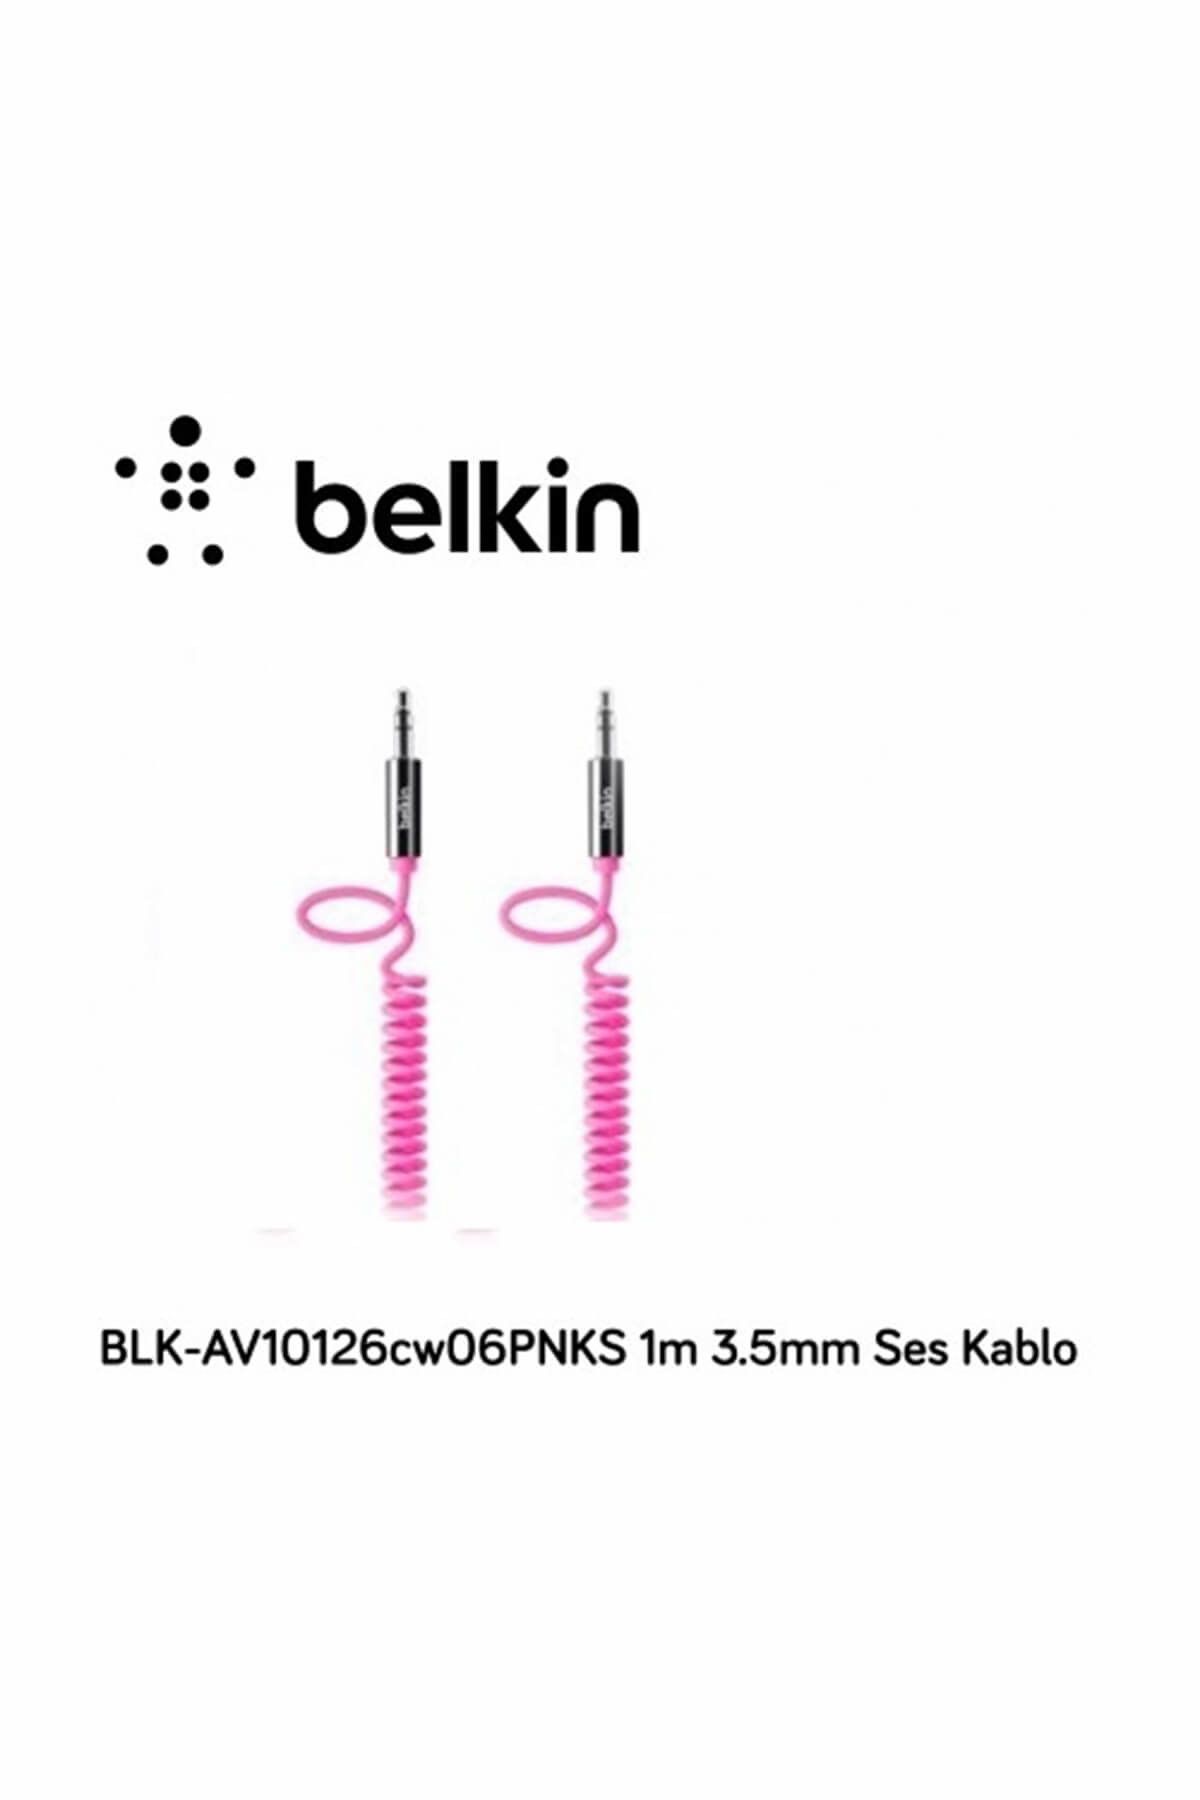 Belkin Blk-av10126cw06pnks 1m 3.5mm Ses Kablo